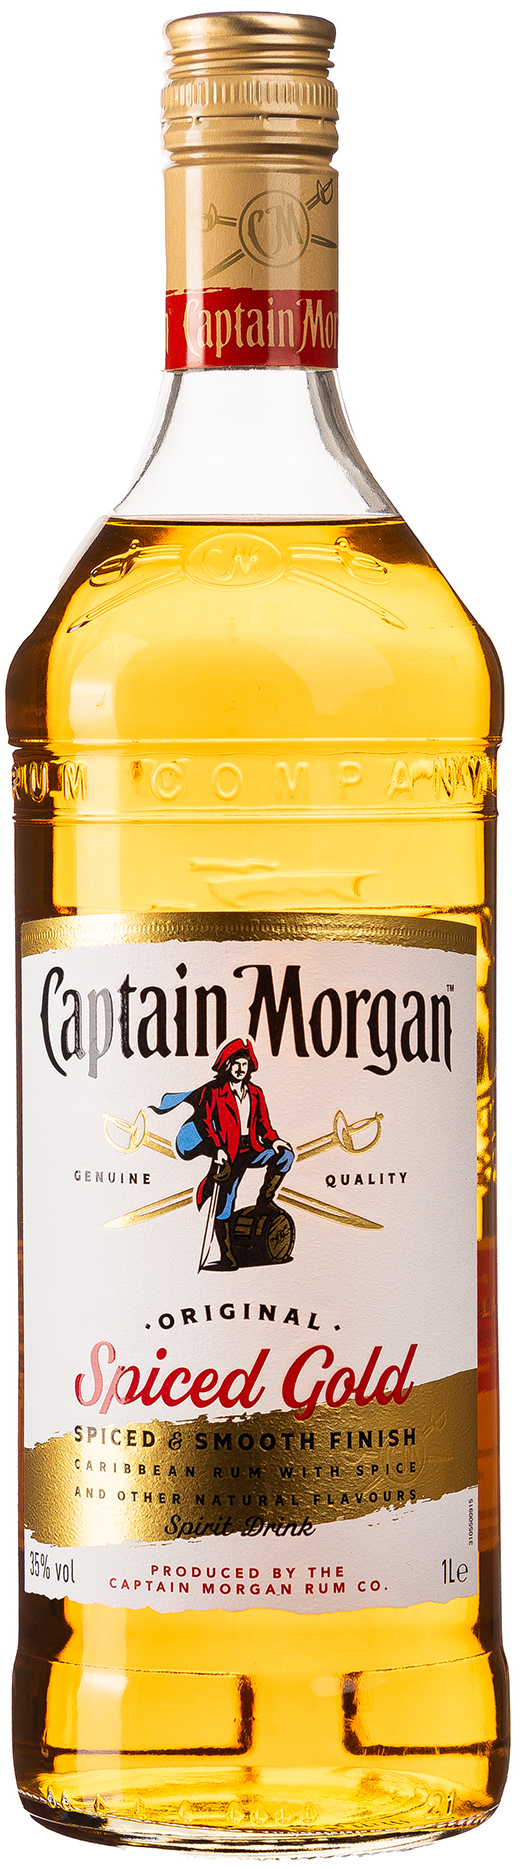 Captain Morgan Original Spiced Gold 35% vol. 1L